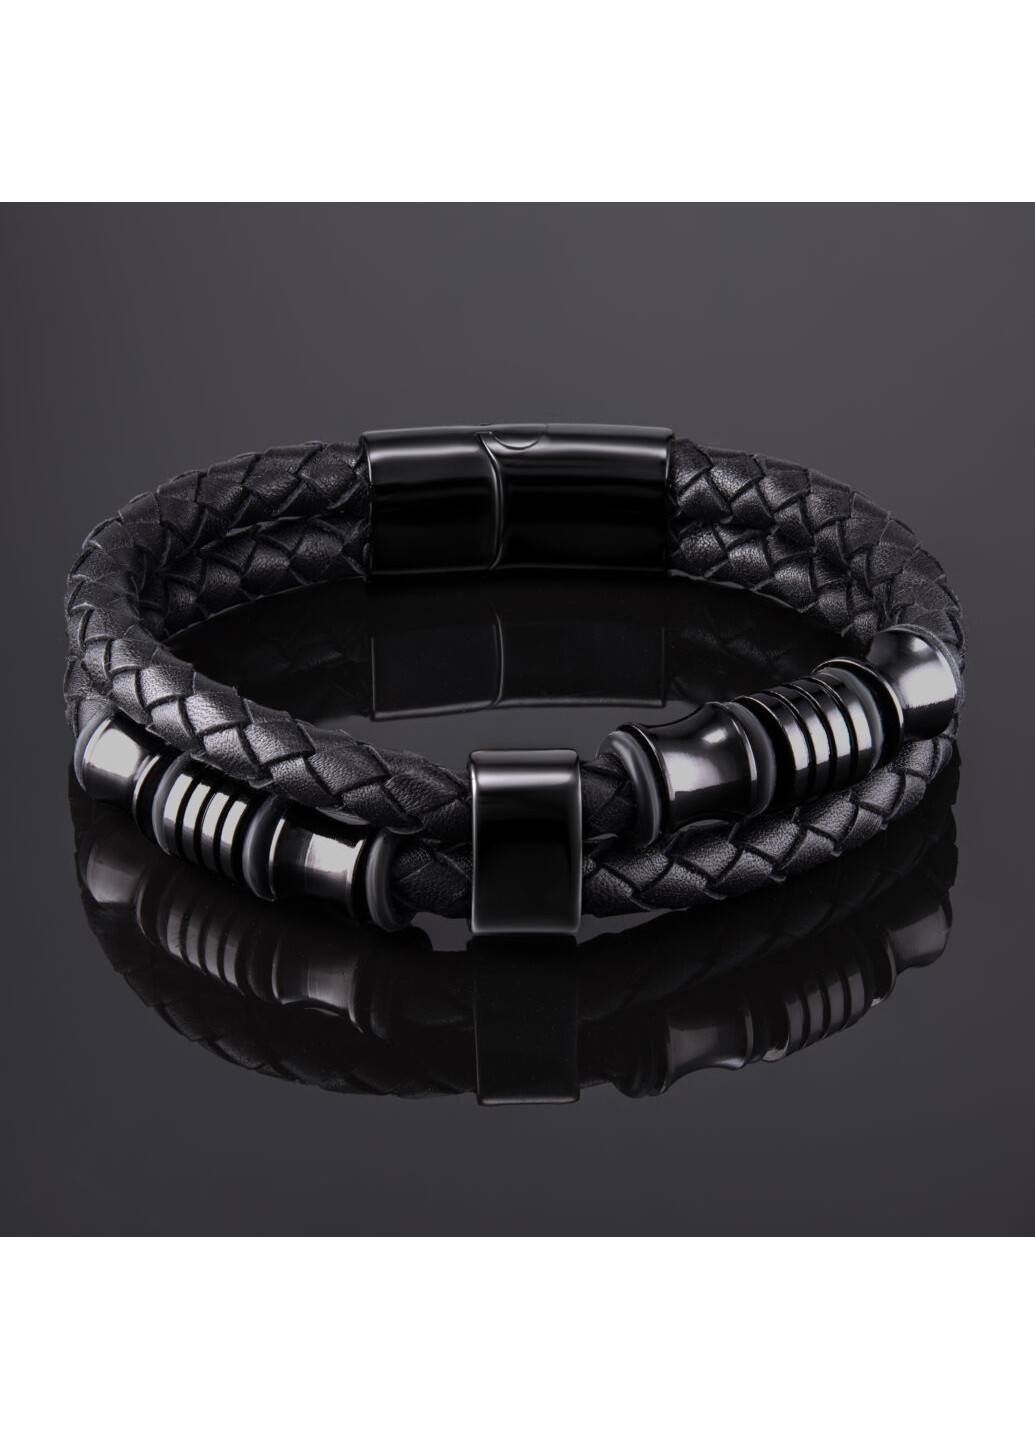 Мужской кожаный браслет LUX-качества из плетеной кожи и стальными вставками цвета Черный LORAN-HM (257763026)